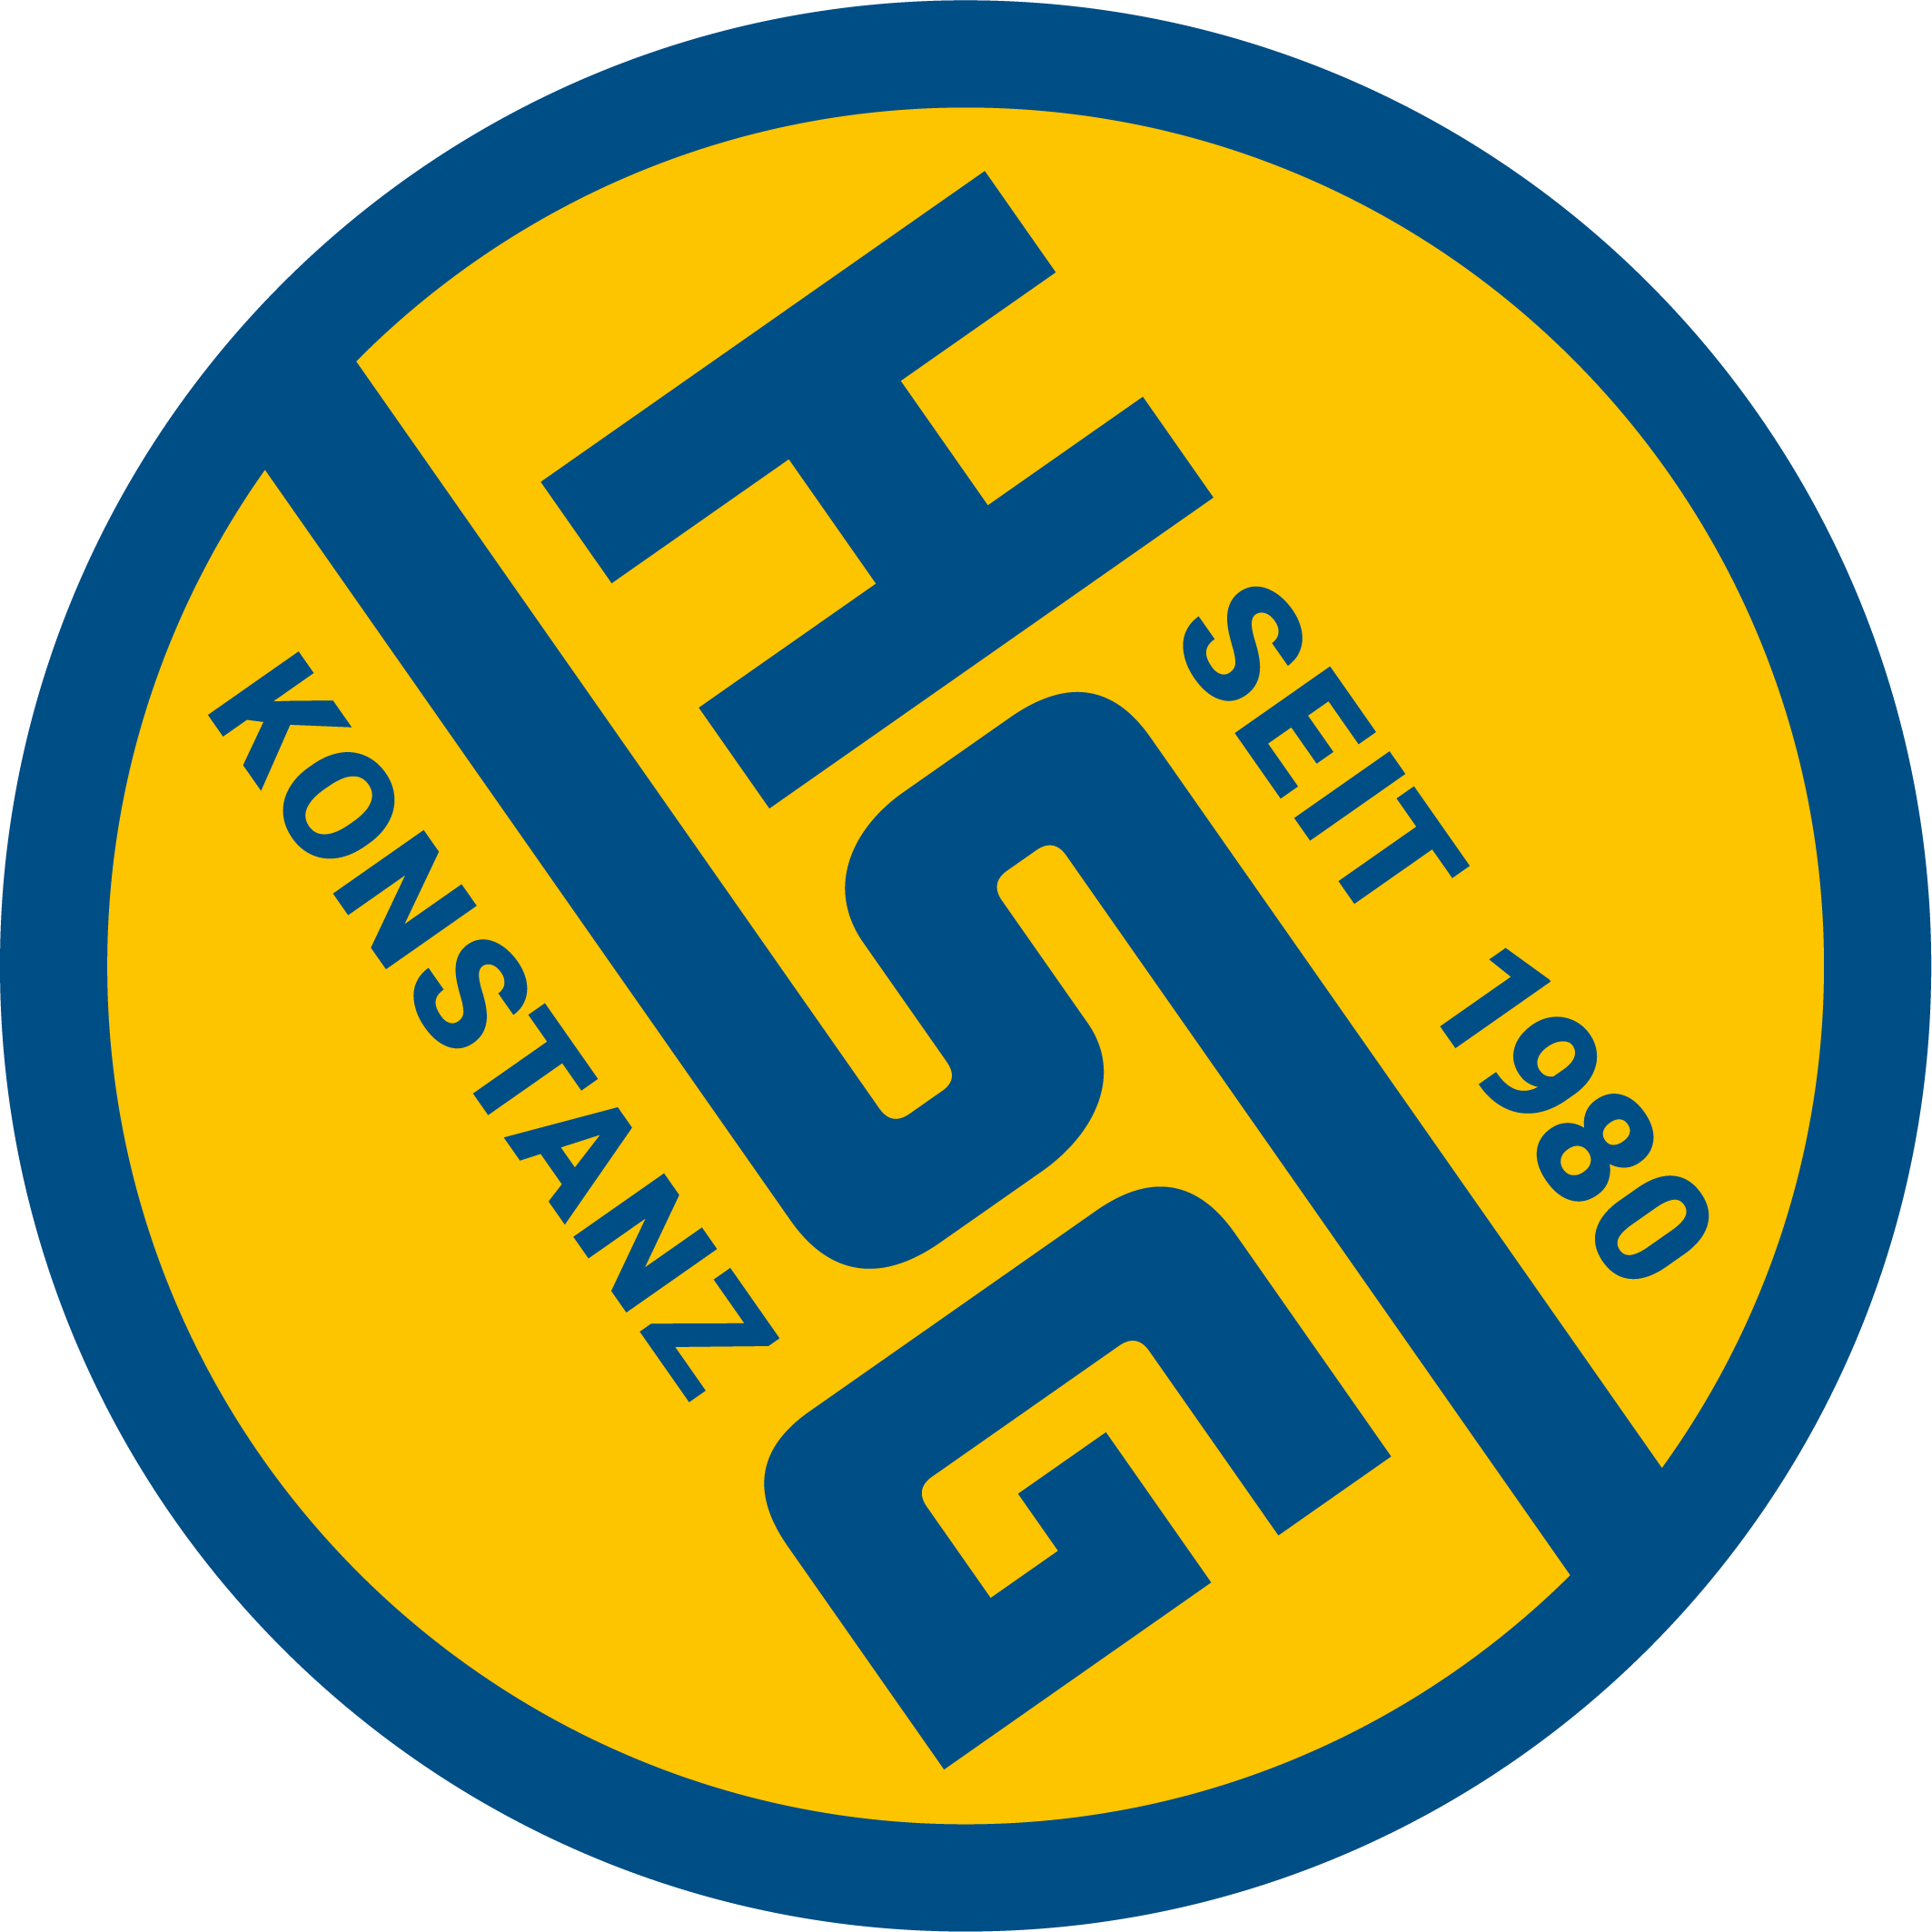 HSG Konstanz II